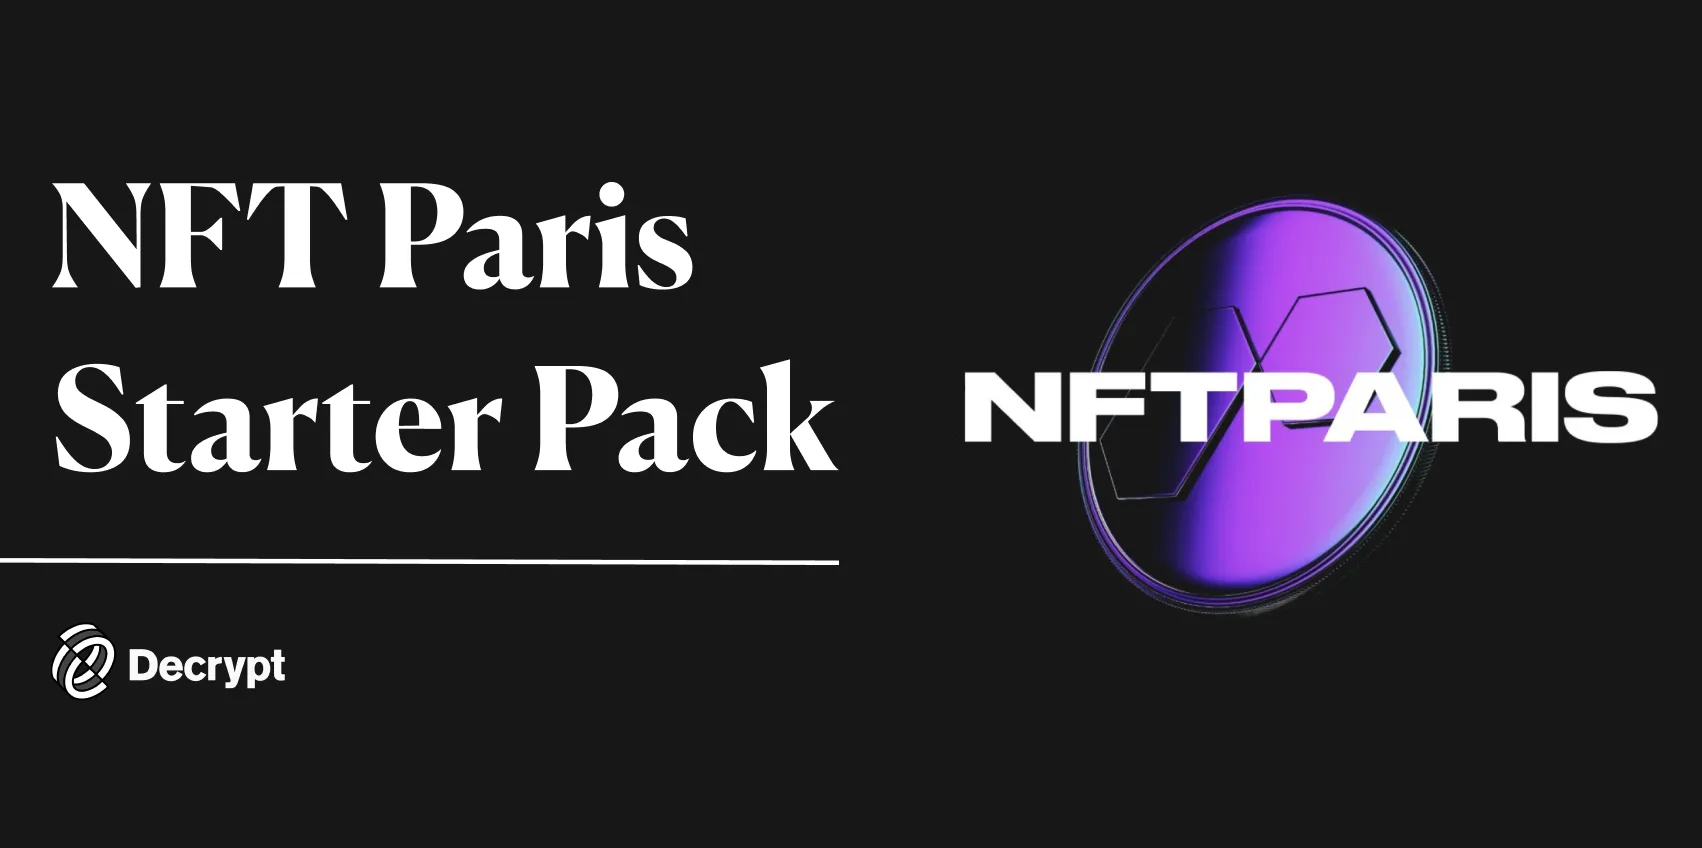 NFT Paris Starter Pack